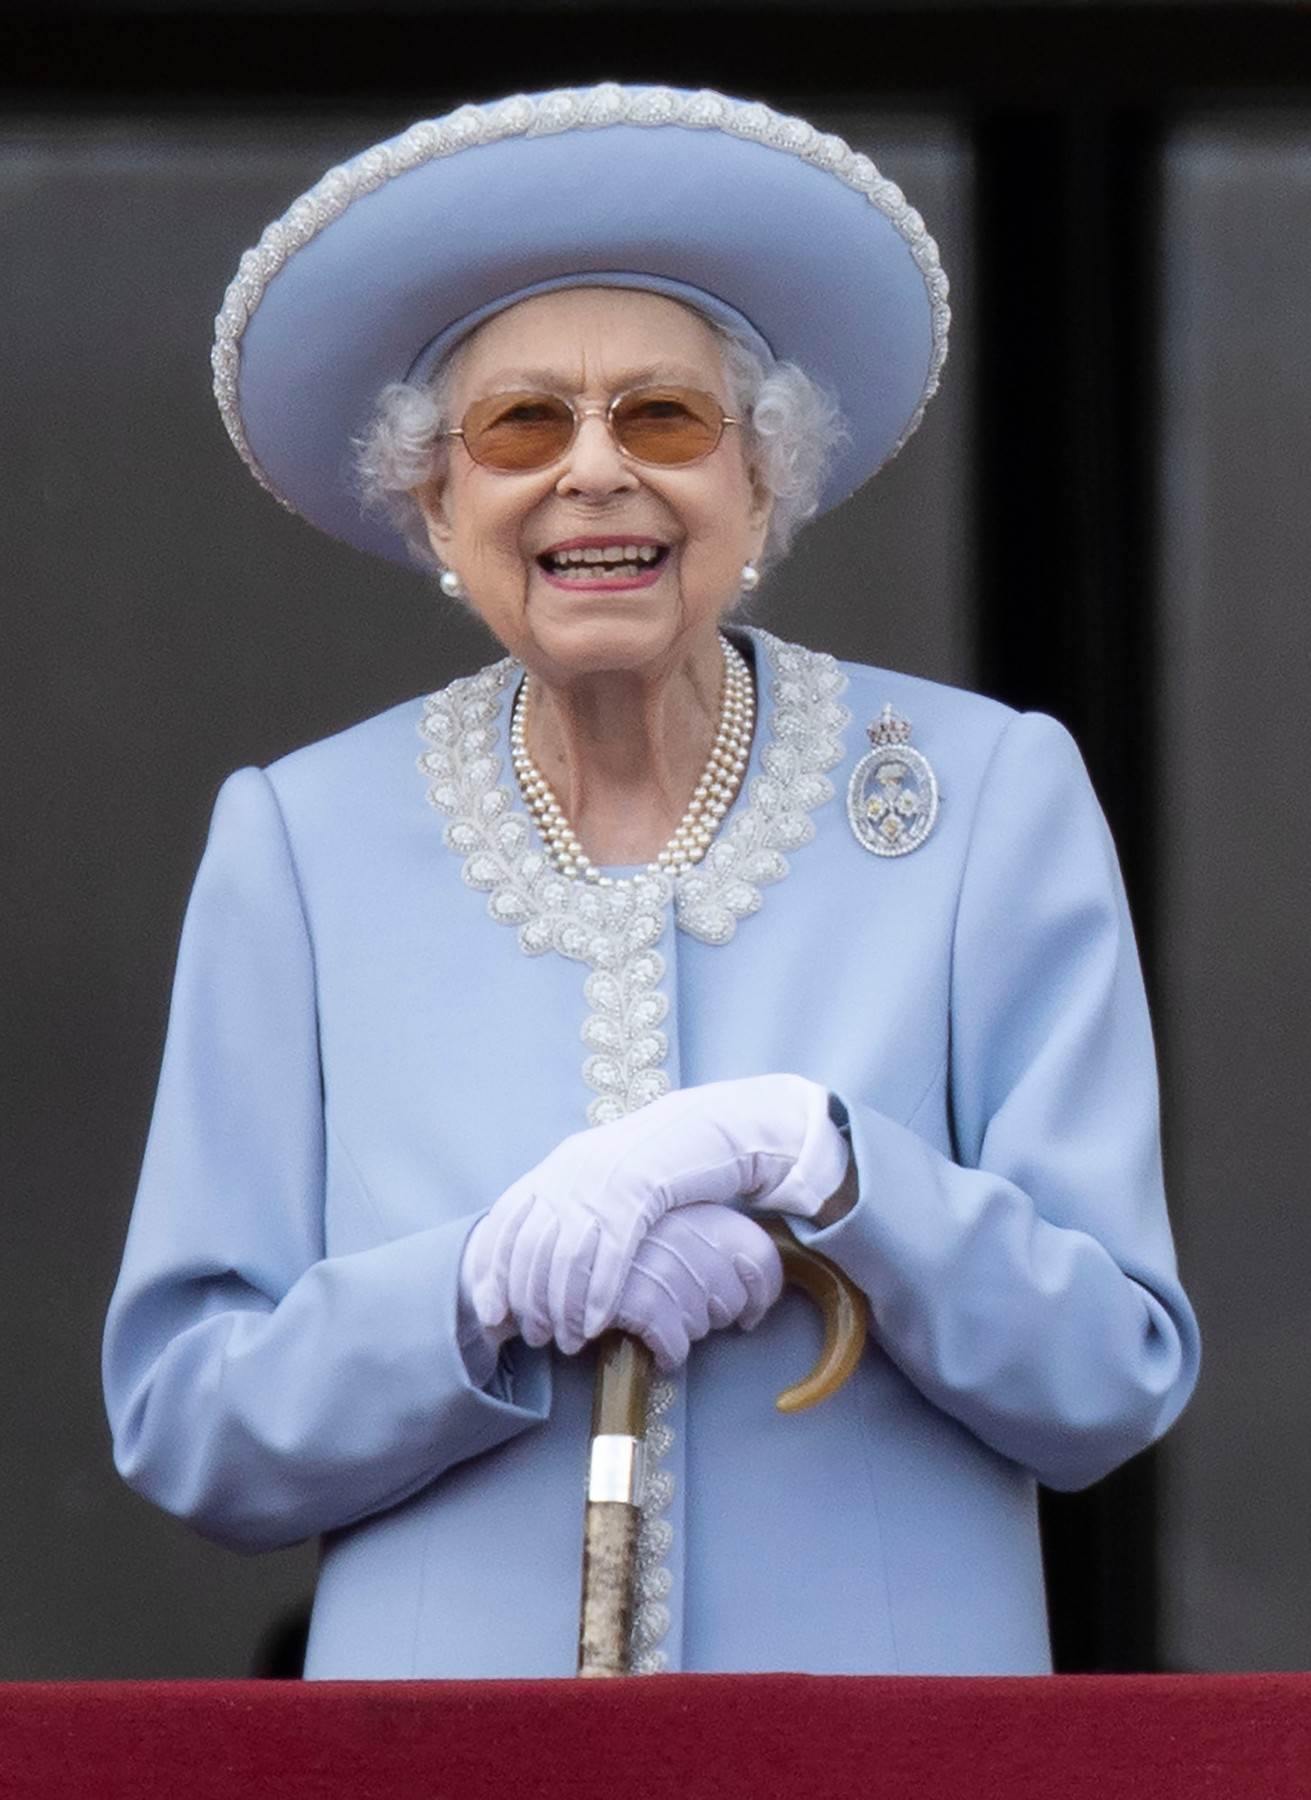  kraljica elizabeta u nežno plavom kostimu. 